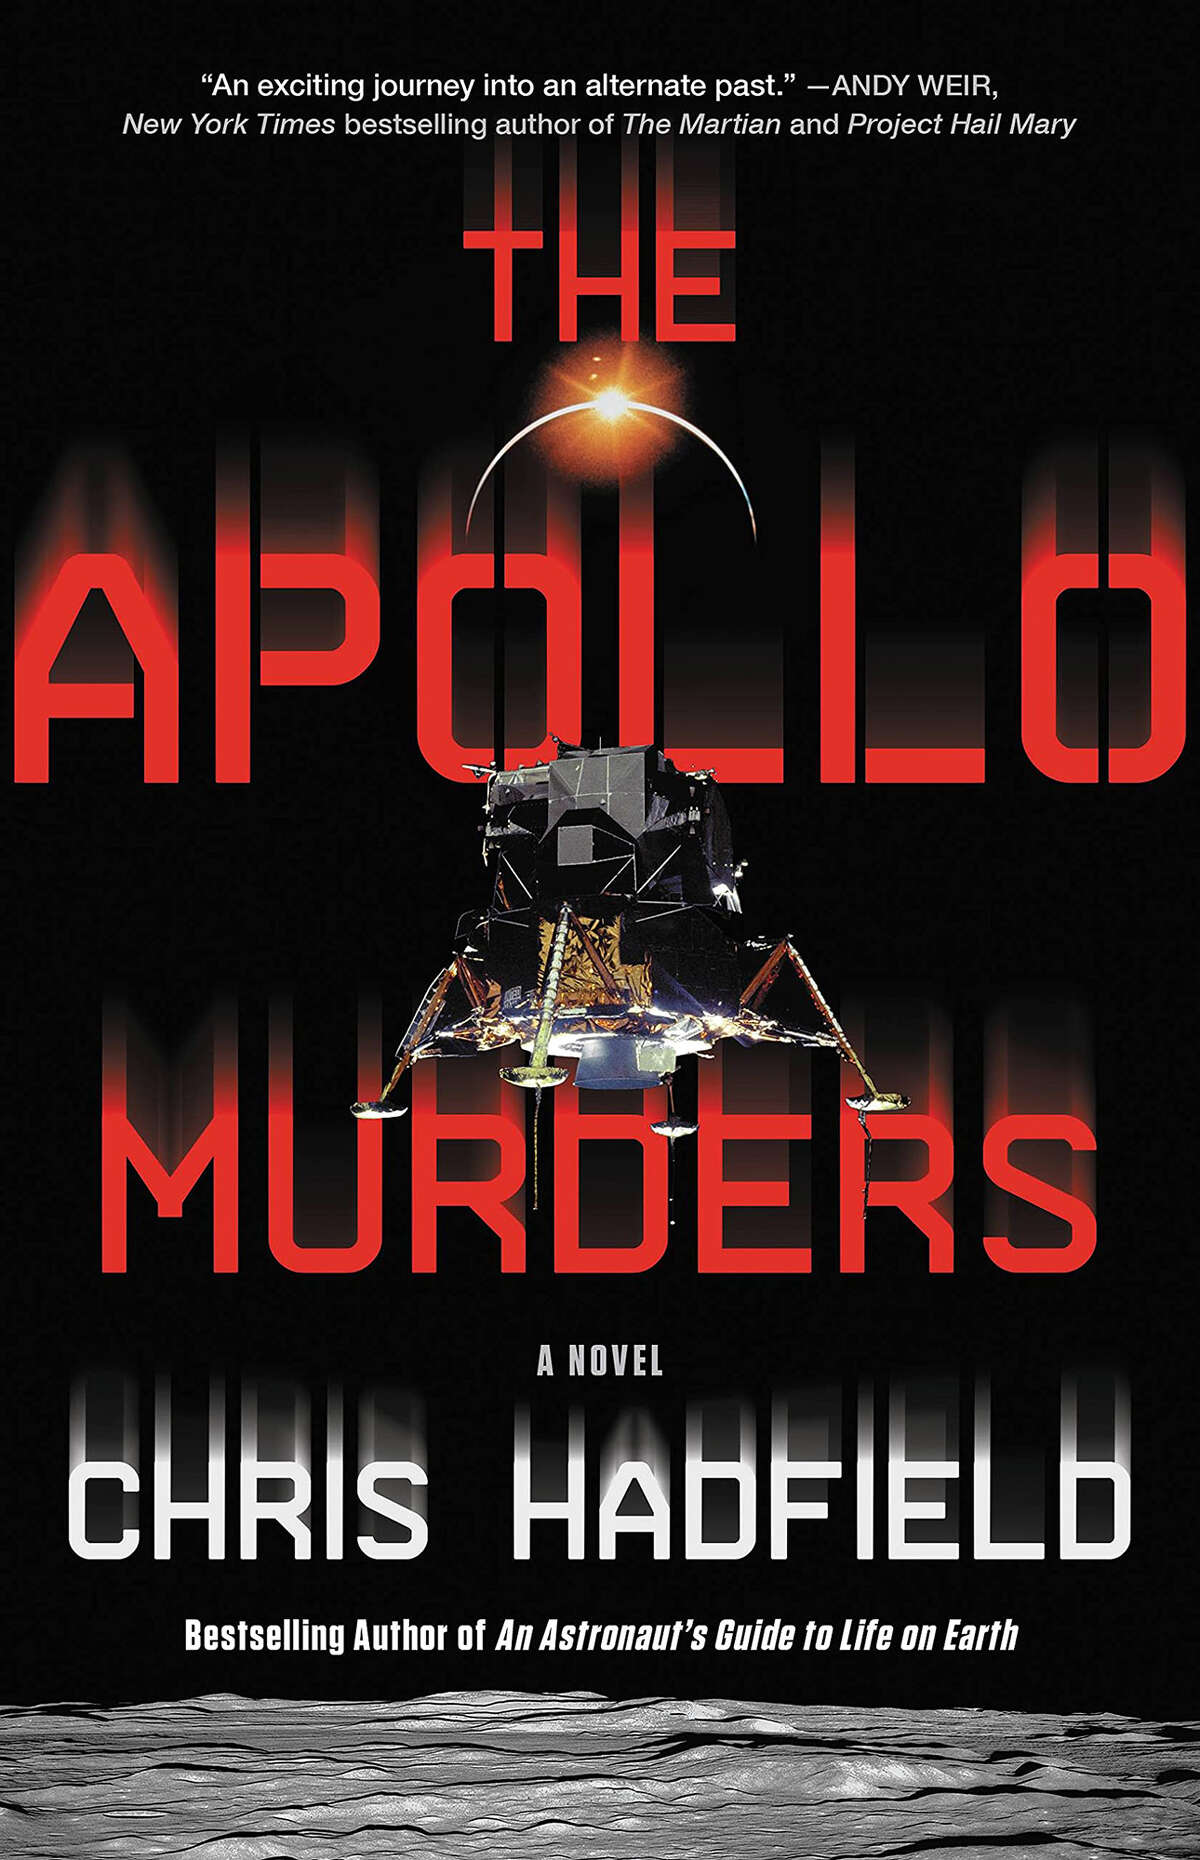 "The Apollo Murders"